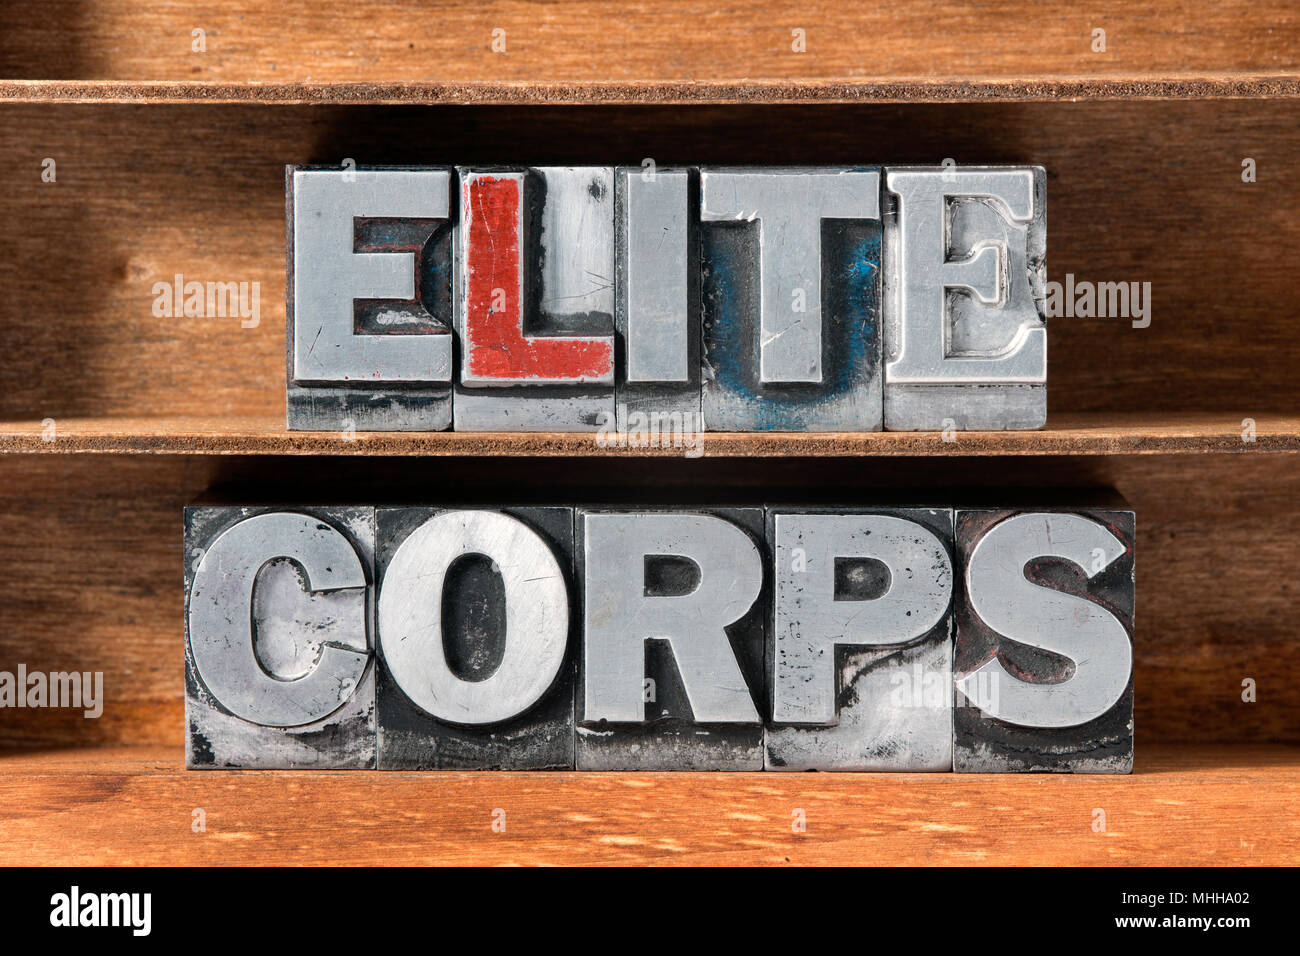 Elite corps Phrase von metallischen Buchdruck Typ auf hölzernen Schale Stockfoto